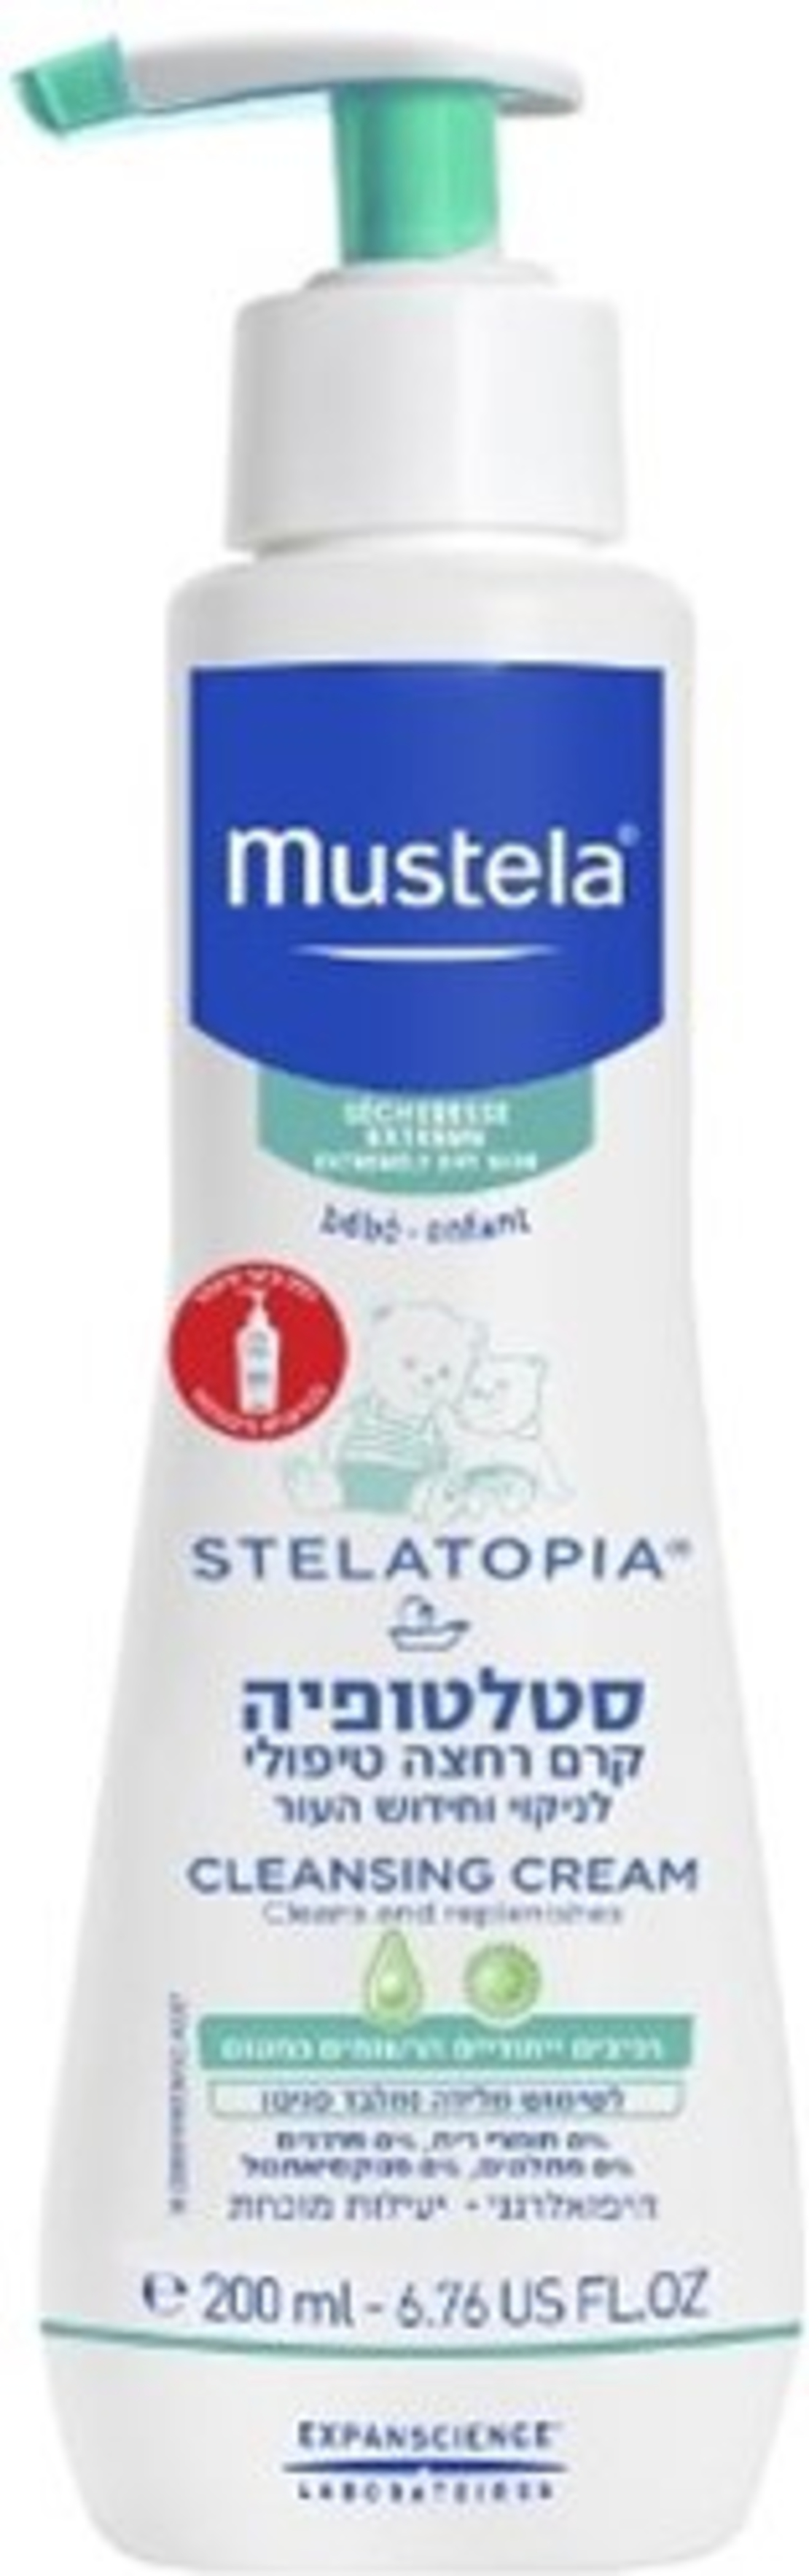 מוסטלה - סטלטופיה קרם רחצה טיפולי Mustela Stelatopia Cleansing Cream